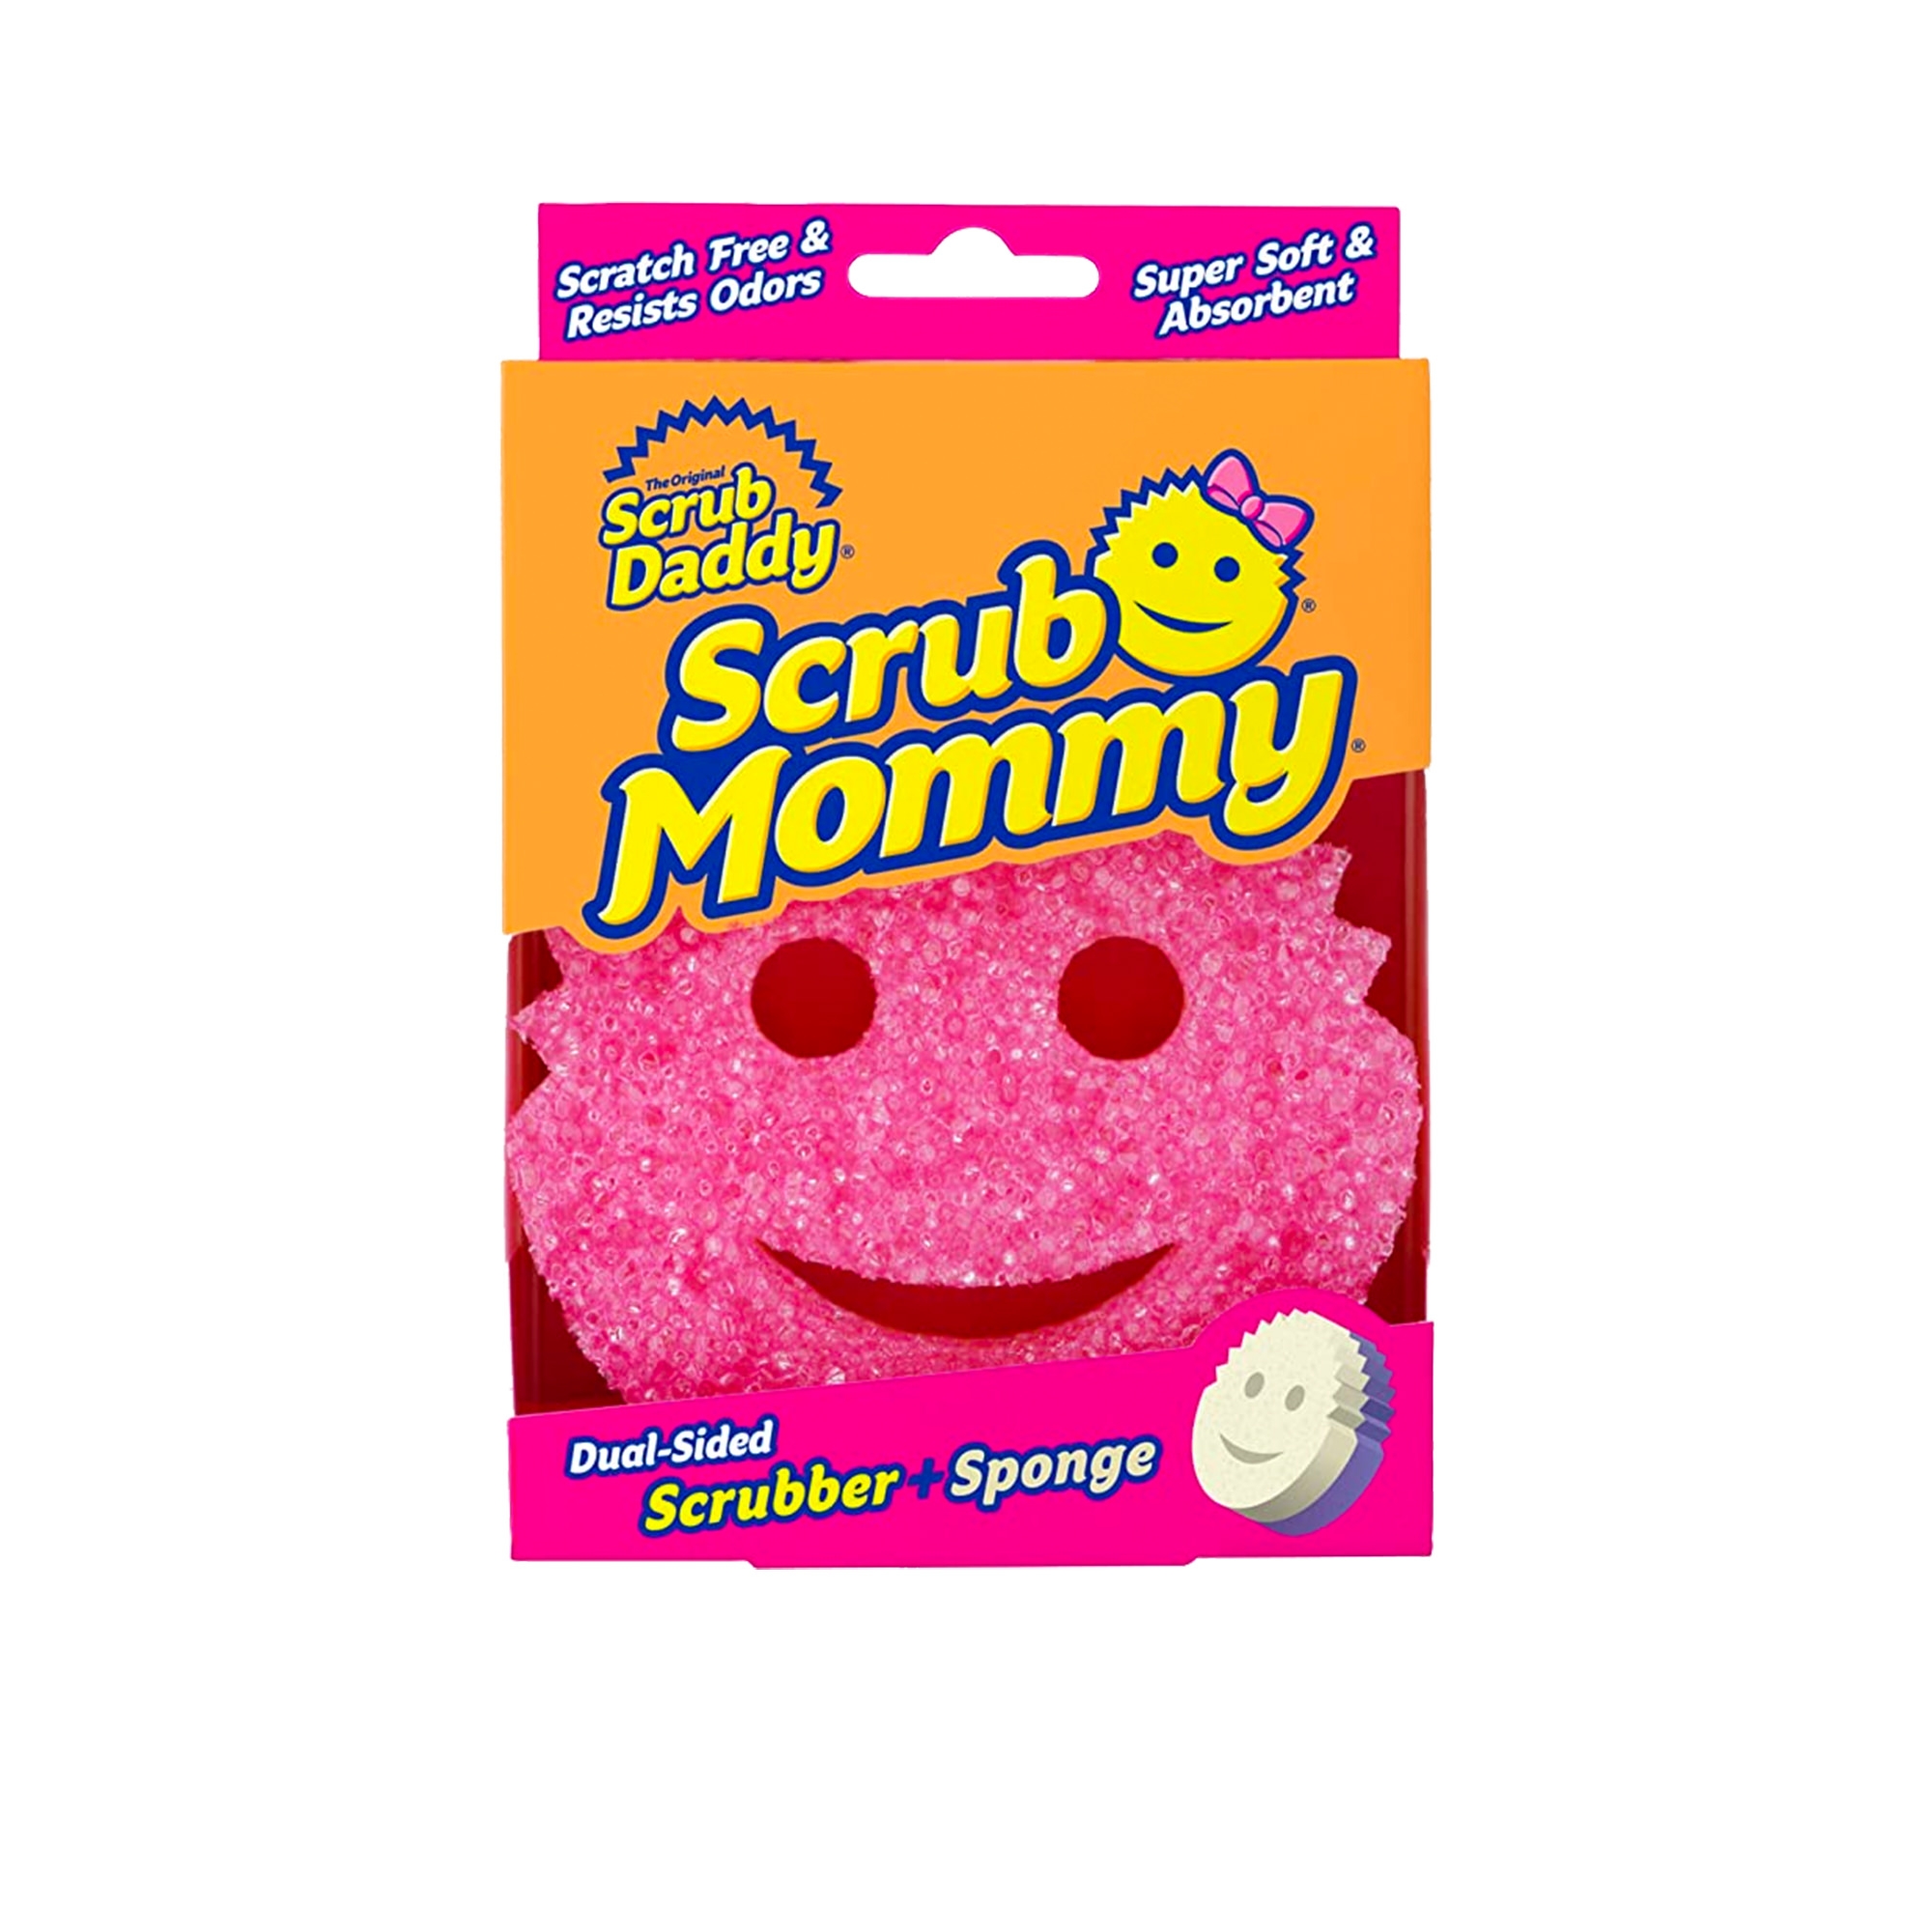 Scrub Daddy - Scrub Mommy Dual Sided Scrubber & Sponge Pink Image 1